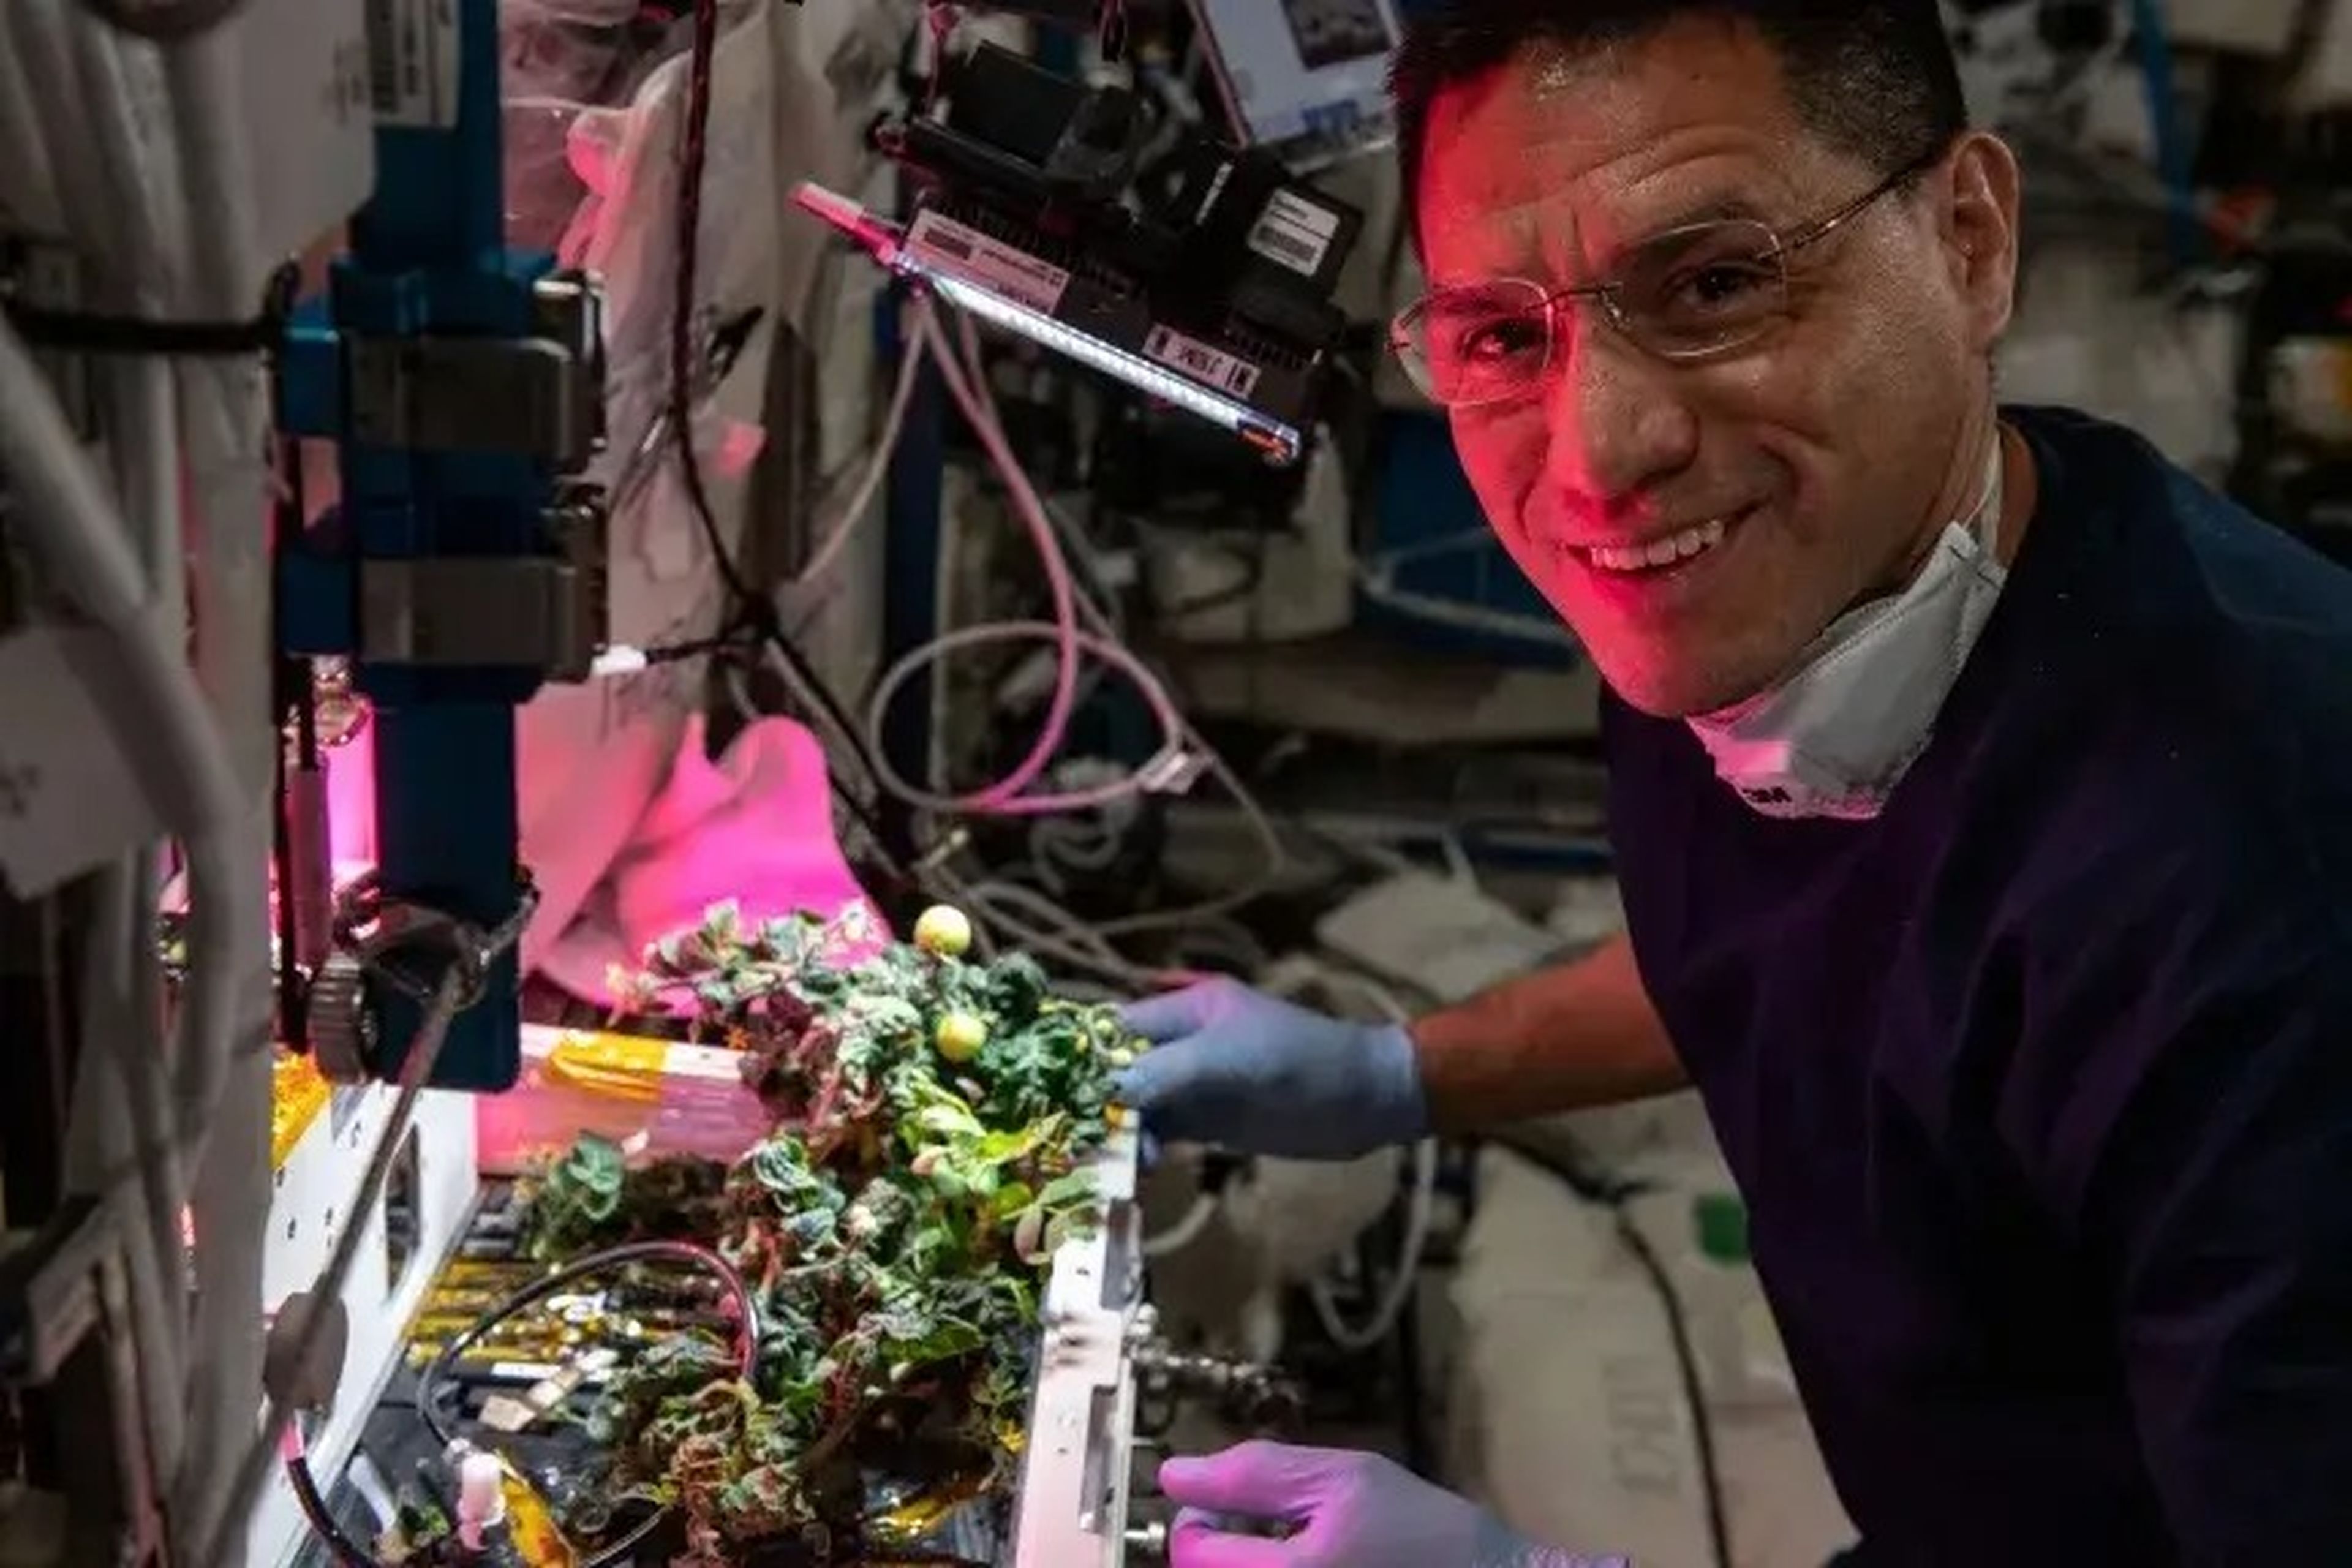 El astronauta de la NASA Frank Rubio fue exonerado después de que sus colegas le acusaran de haberse comido los tomates desaparecidos